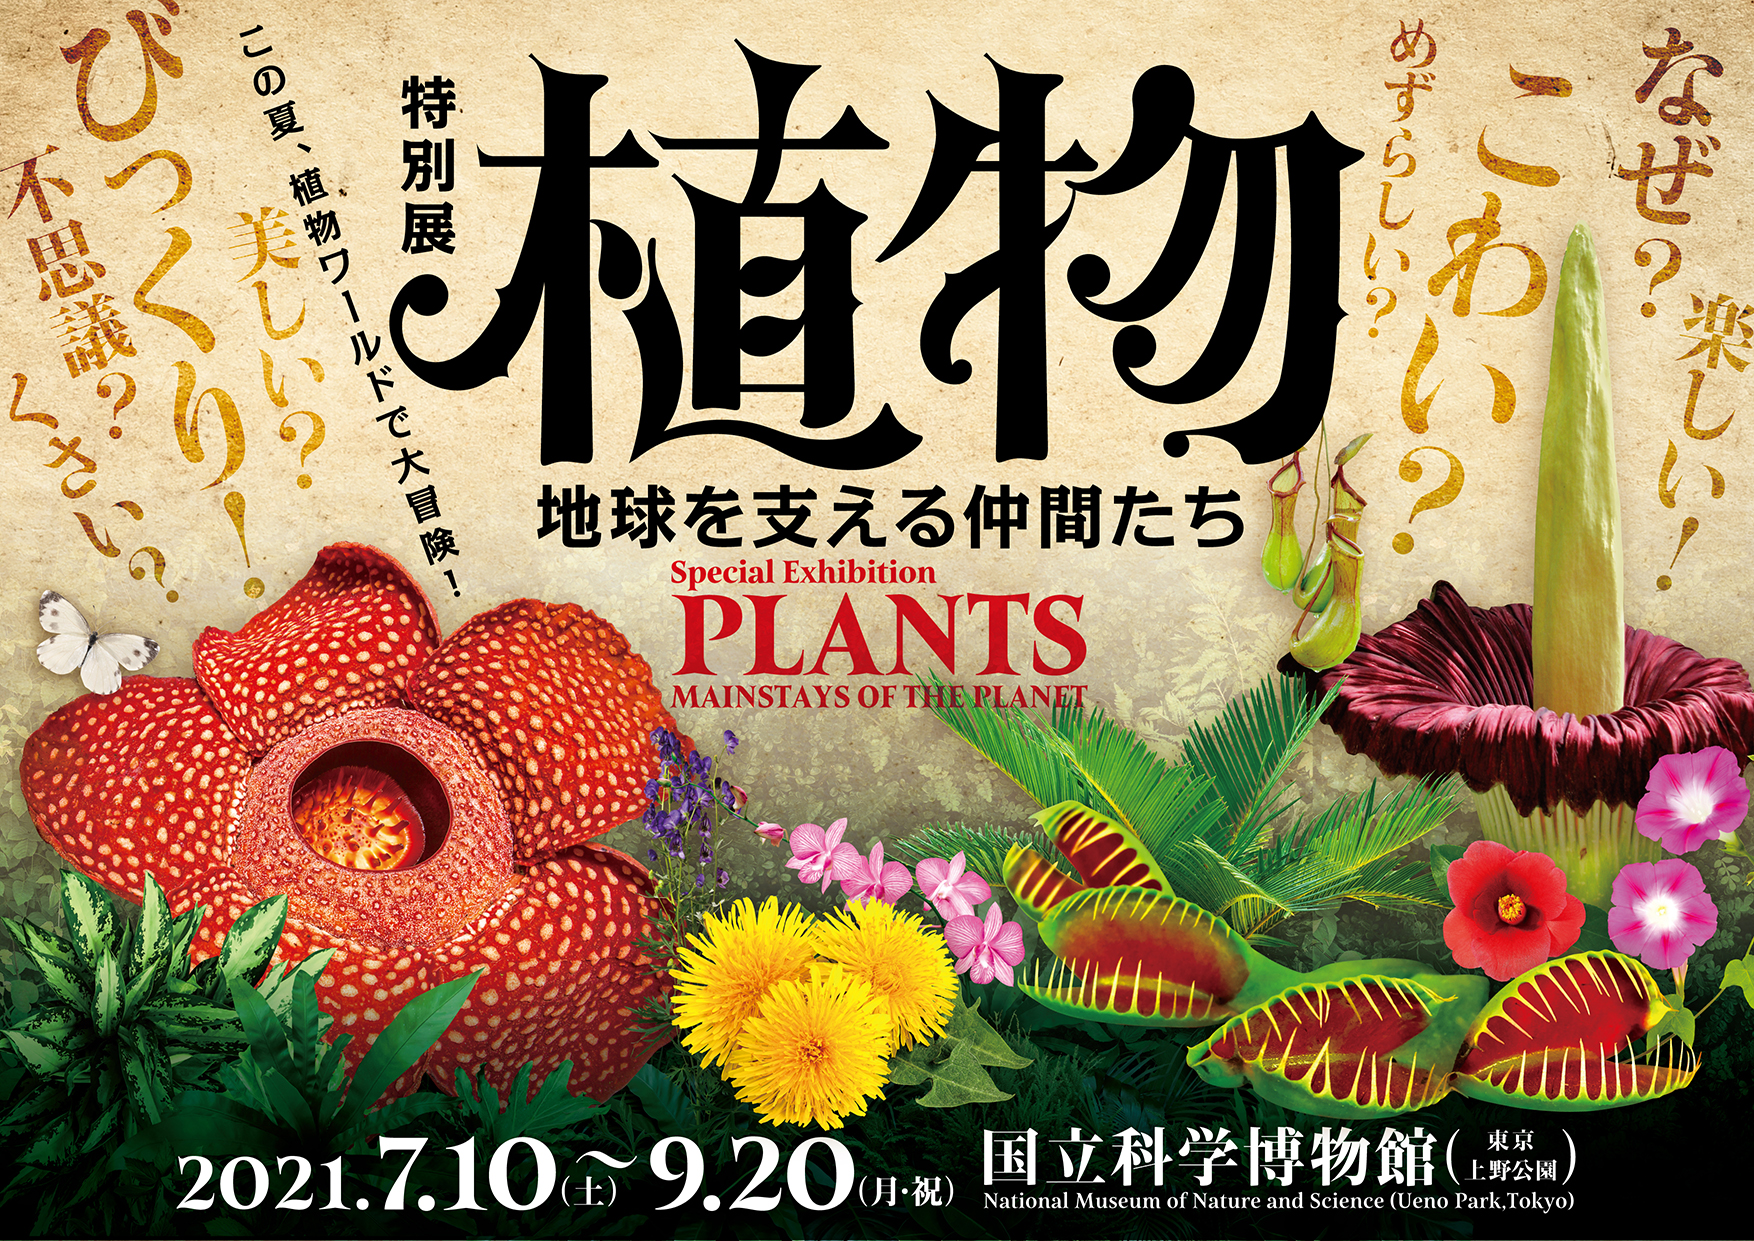 国立科学博物館 7月10日 土 開幕 国立科学博物館 東京 上野公園 特別展 植物 地球を支える仲間たち 文化庁のプレスリリース